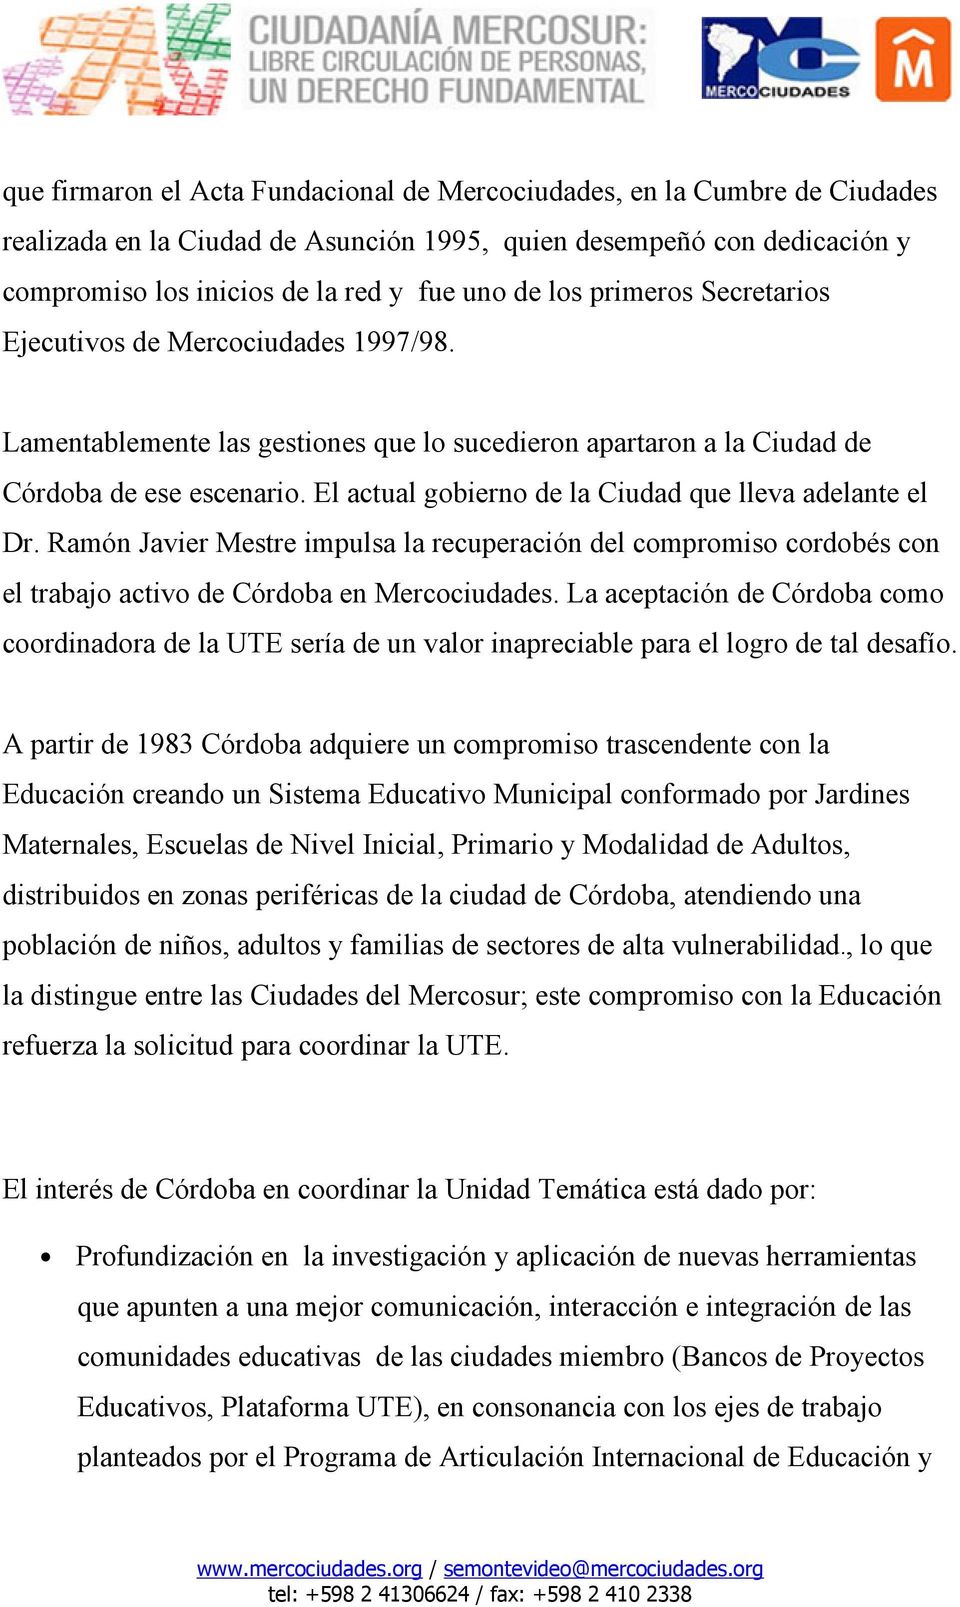 El actual gobierno de la Ciudad que lleva adelante el Dr. Ramón Javier Mestre impulsa la recuperación del compromiso cordobés con el trabajo activo de Córdoba en Mercociudades.